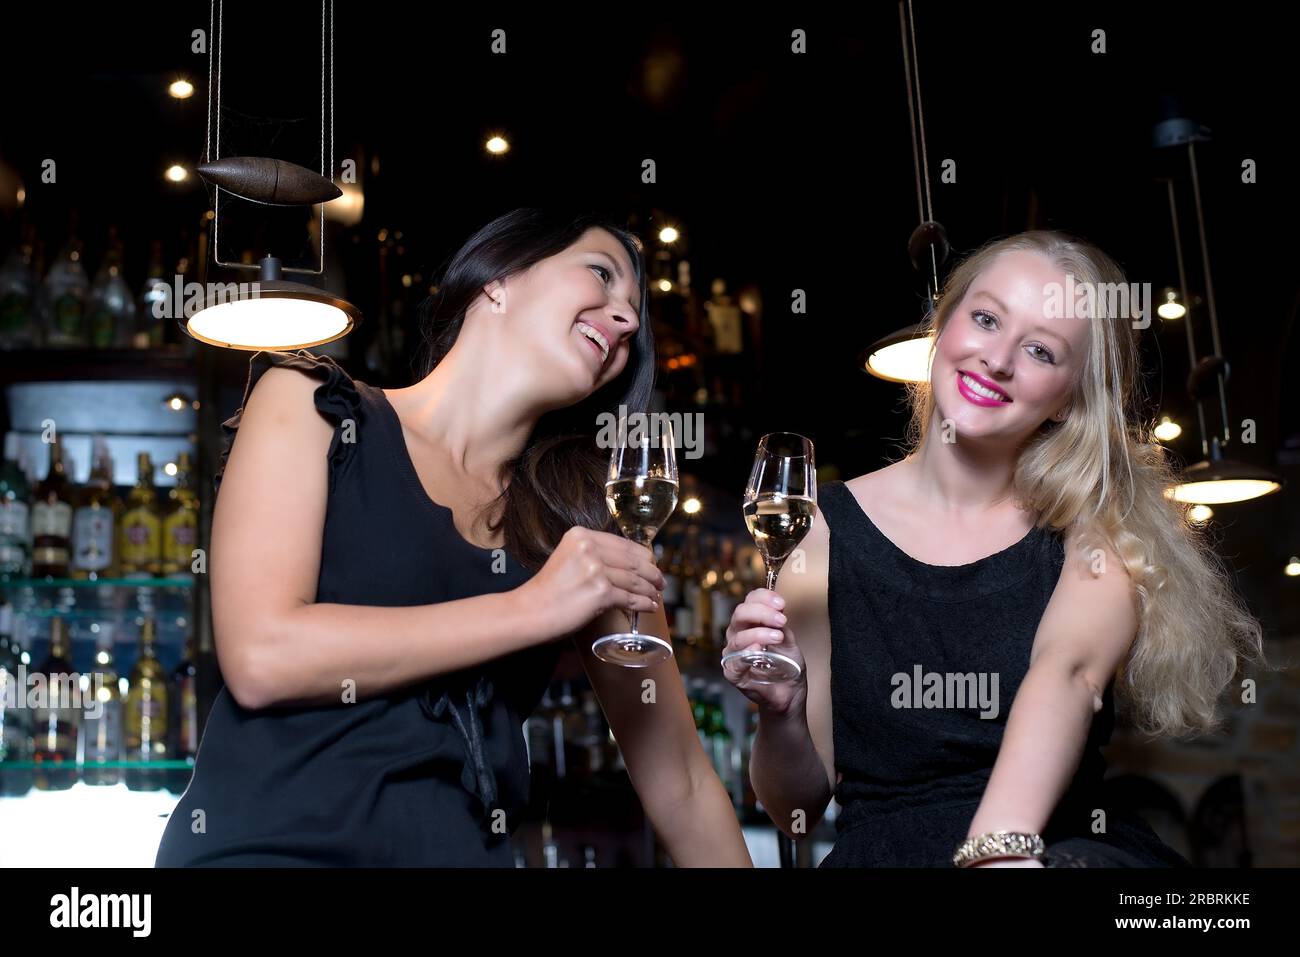 Zwei wunderschöne junge Frauen, die elegante schwarze Kleider tragen, feiern mit alkoholischen Getränken an einem schicken Ort Stockfoto